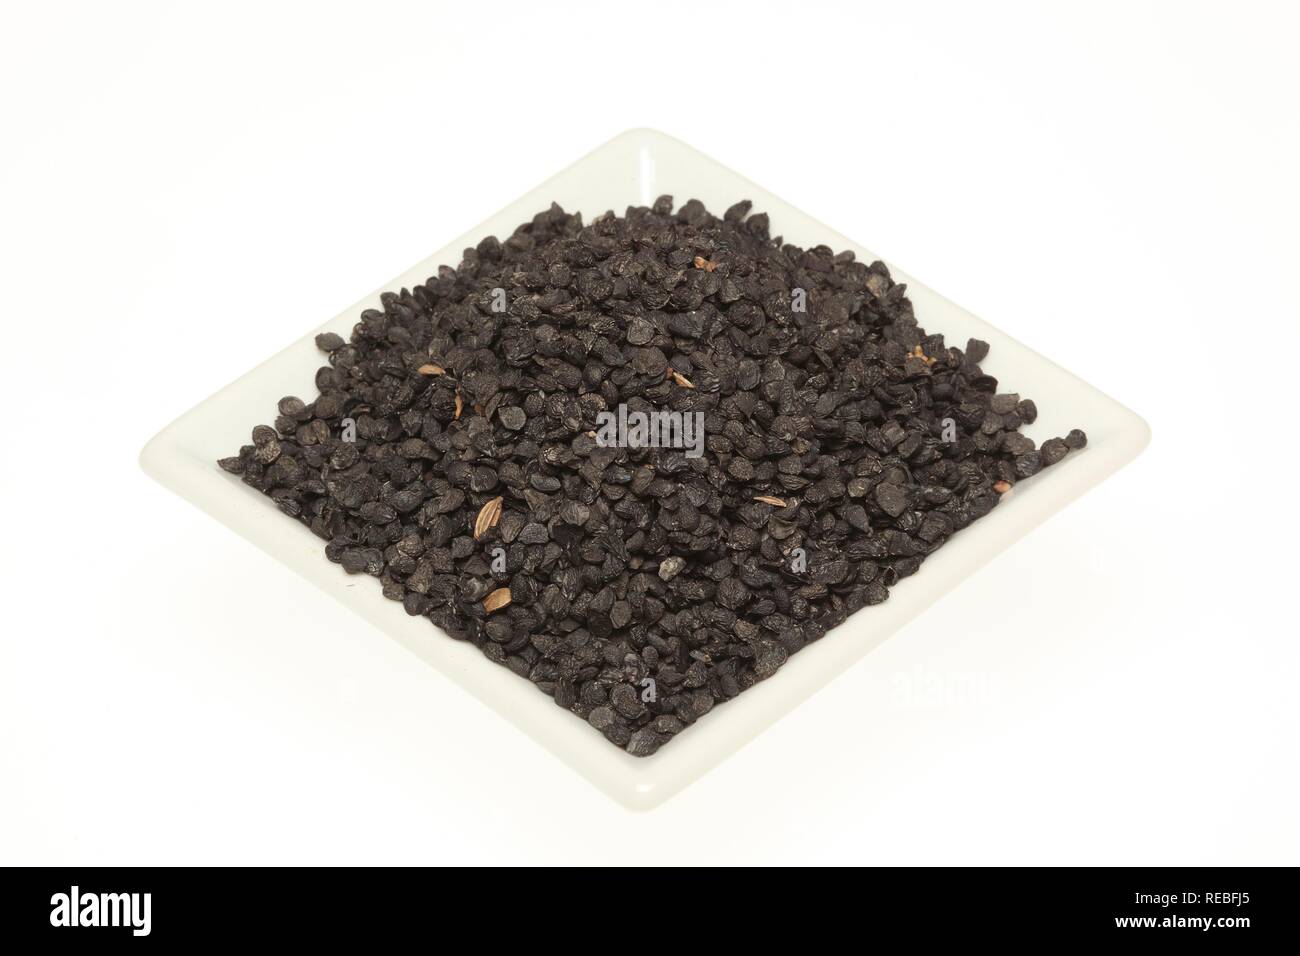 Saatgut der Knoblauch Schnittlauch oder Chinesischer Lauch (Allium tuberosum), für medizinische Zwecke und als Gewürz verwendet Stockfoto